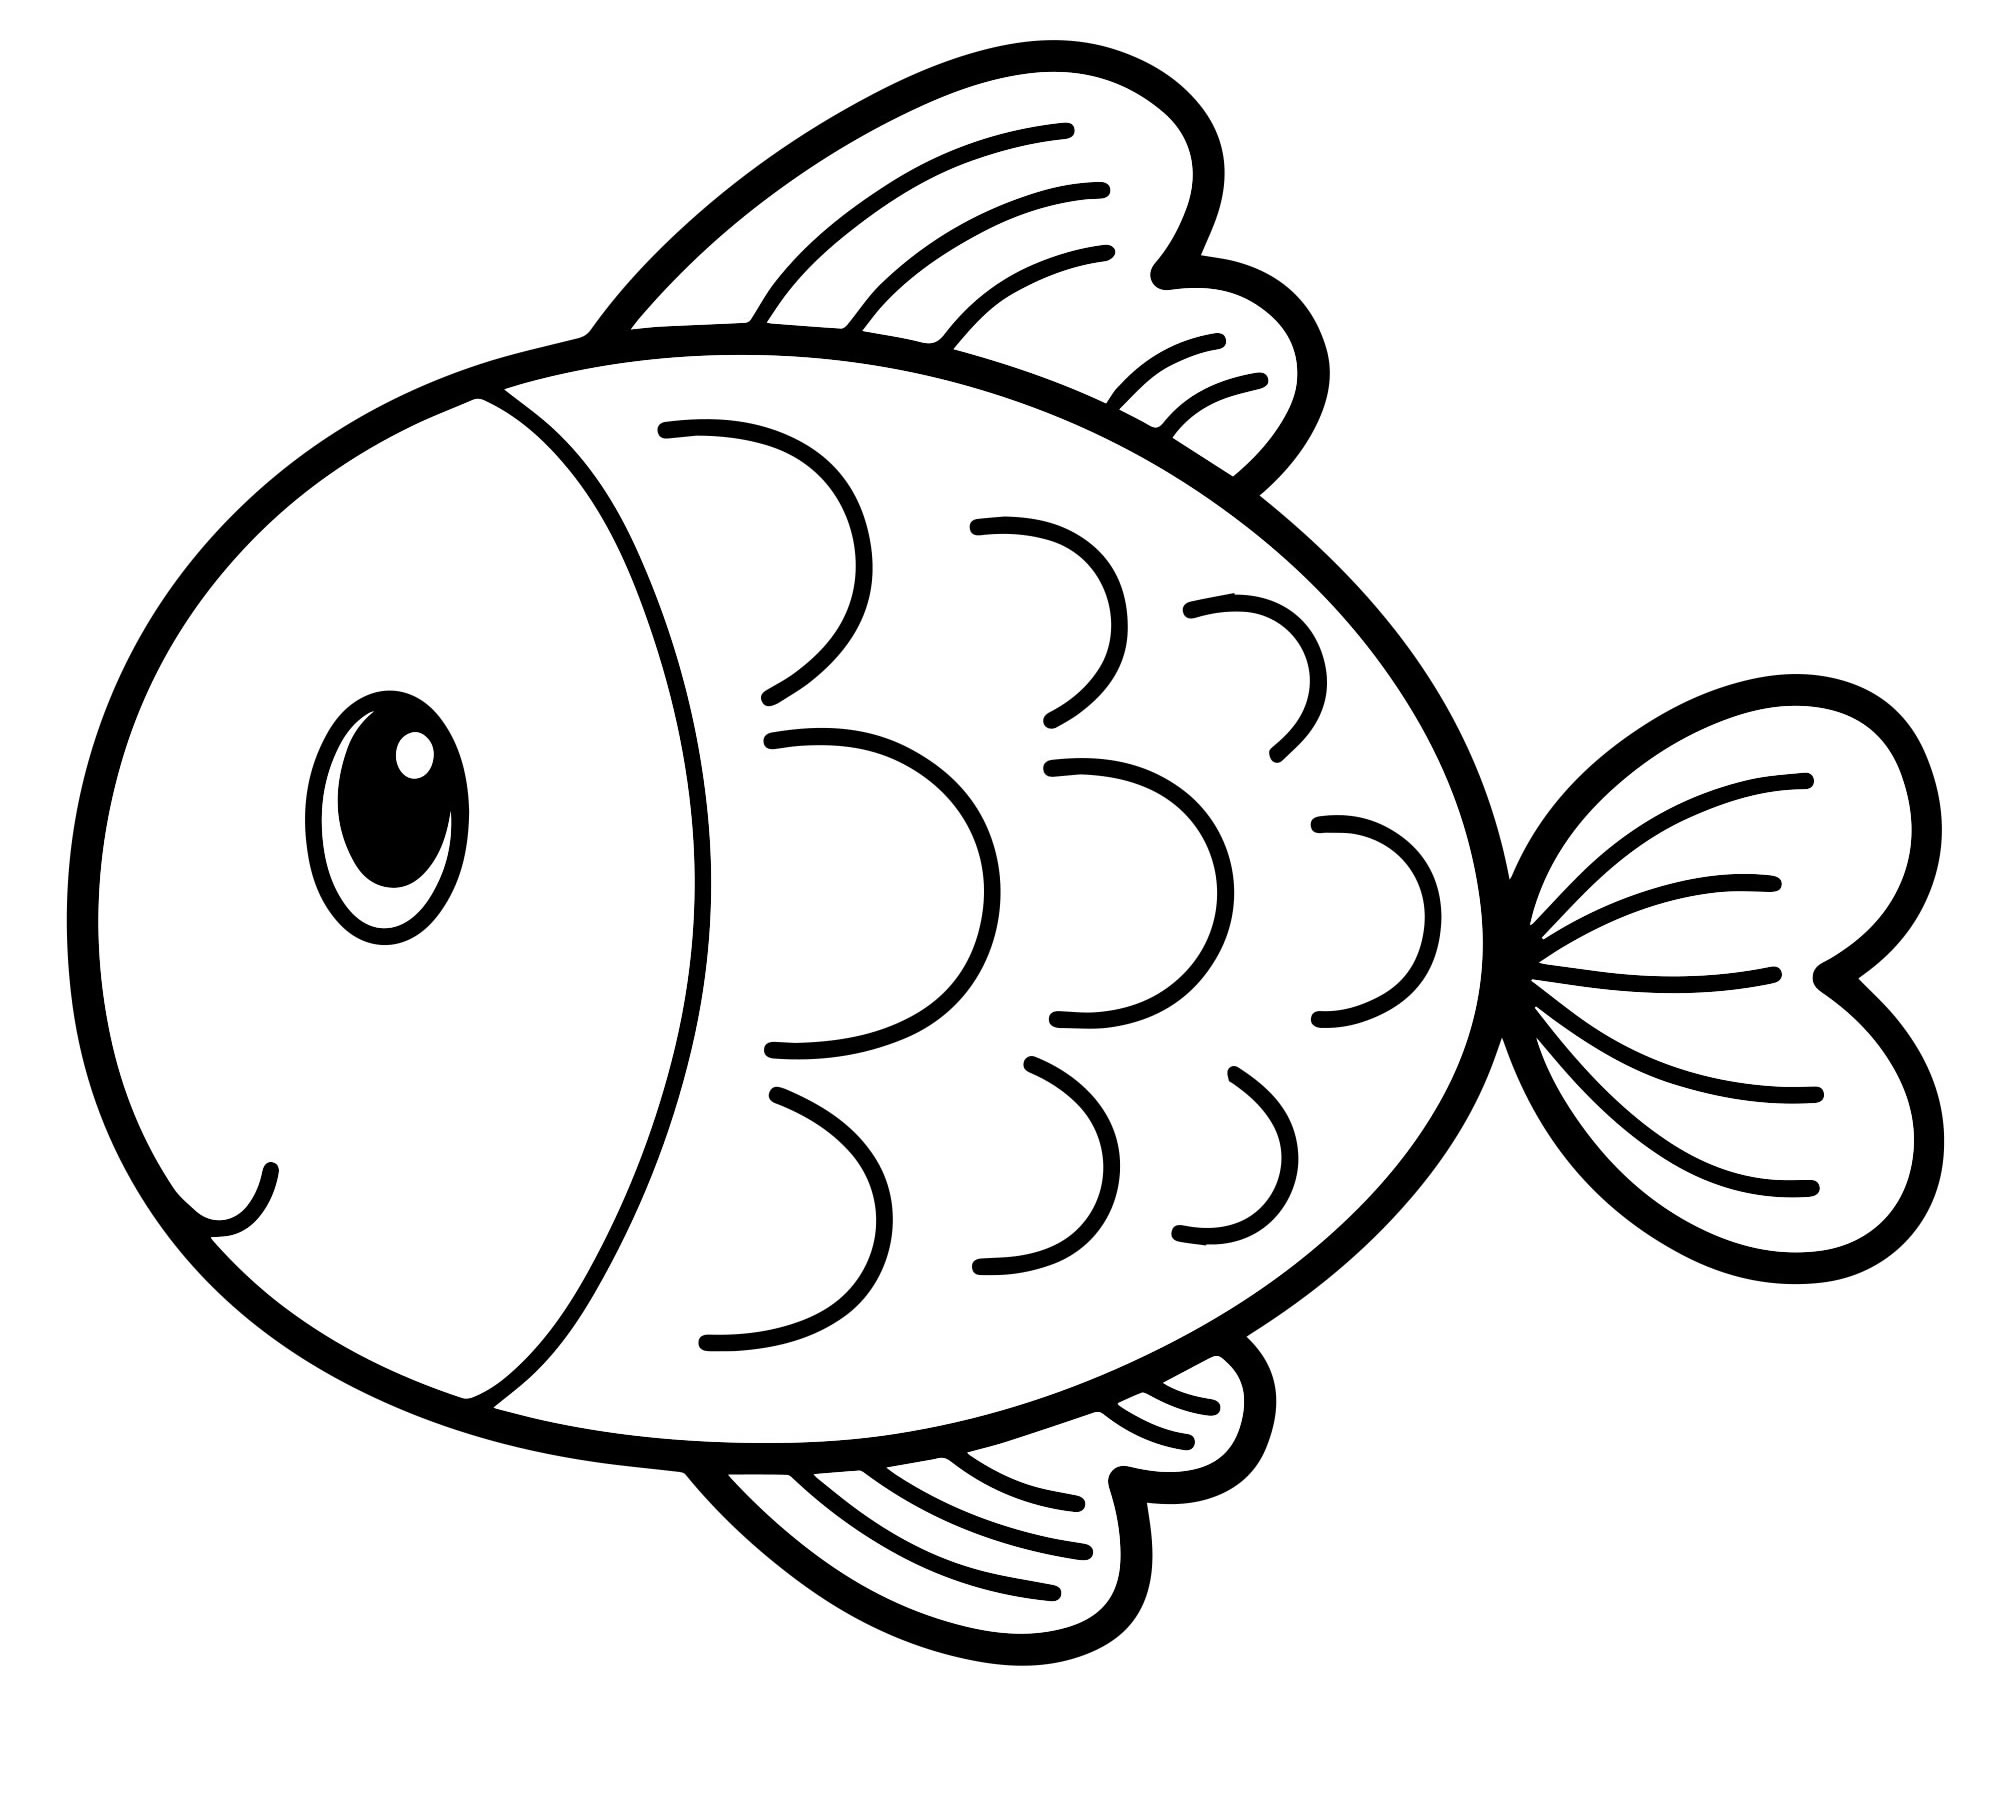 Раскраска-рыбки | Раскраски, Рисунки малышей, Детские раскраски